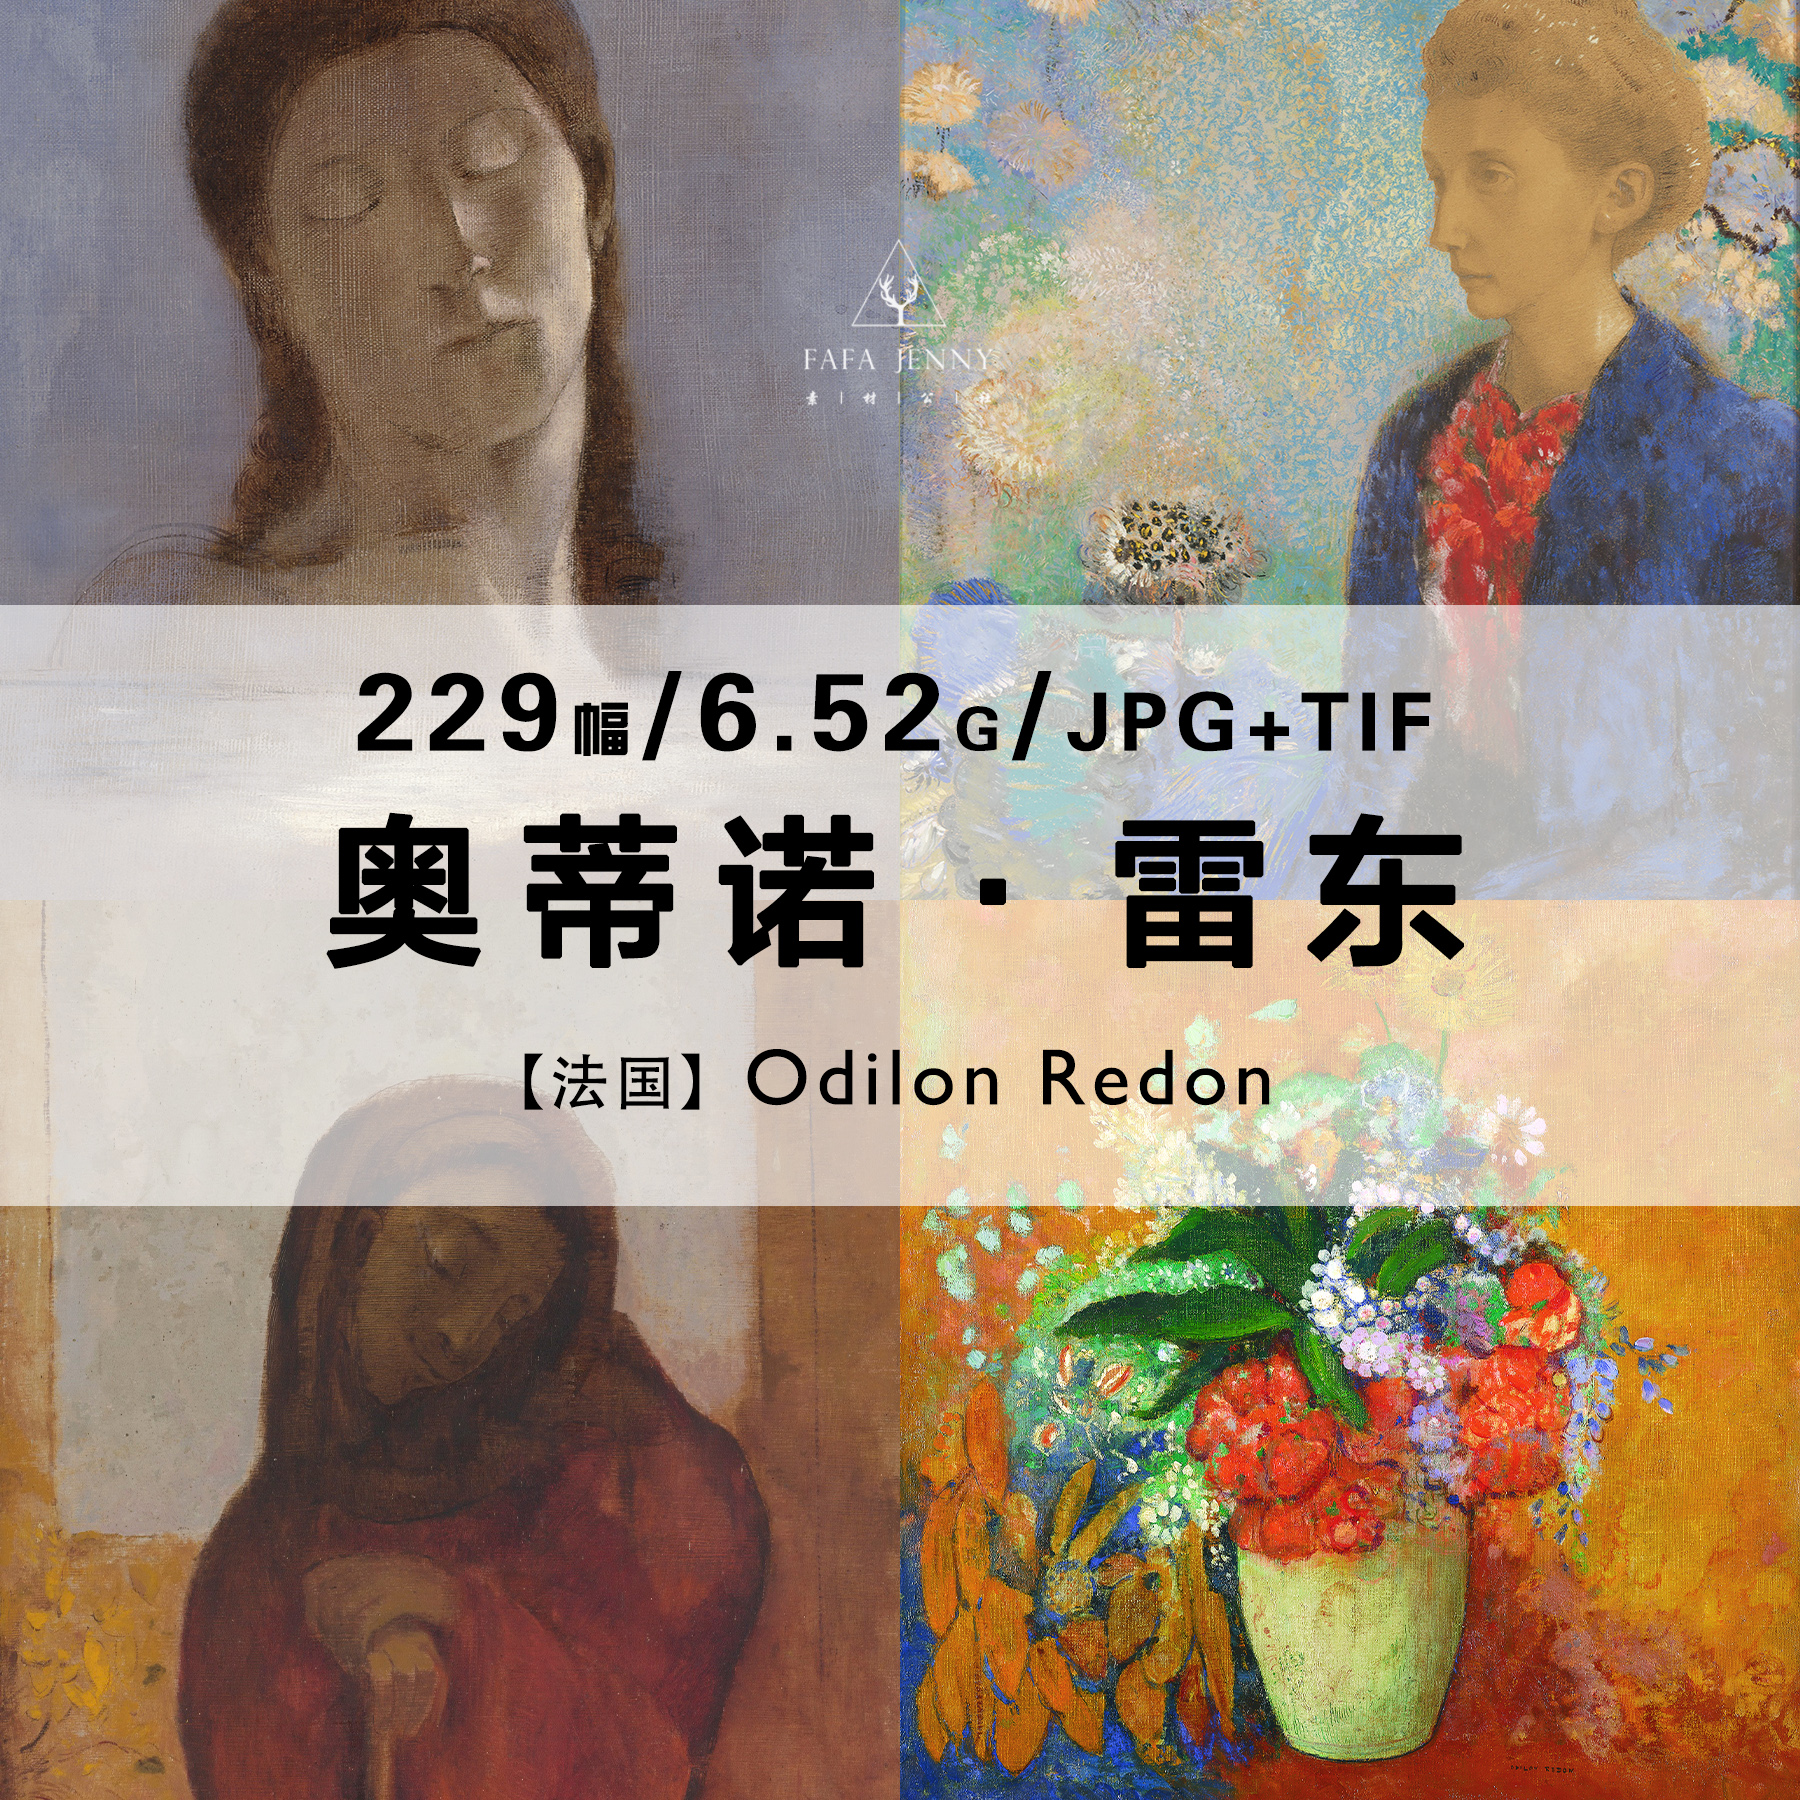 雷东Odilon Redon法国素描油画绘画作品合集高清电子图片素材资料